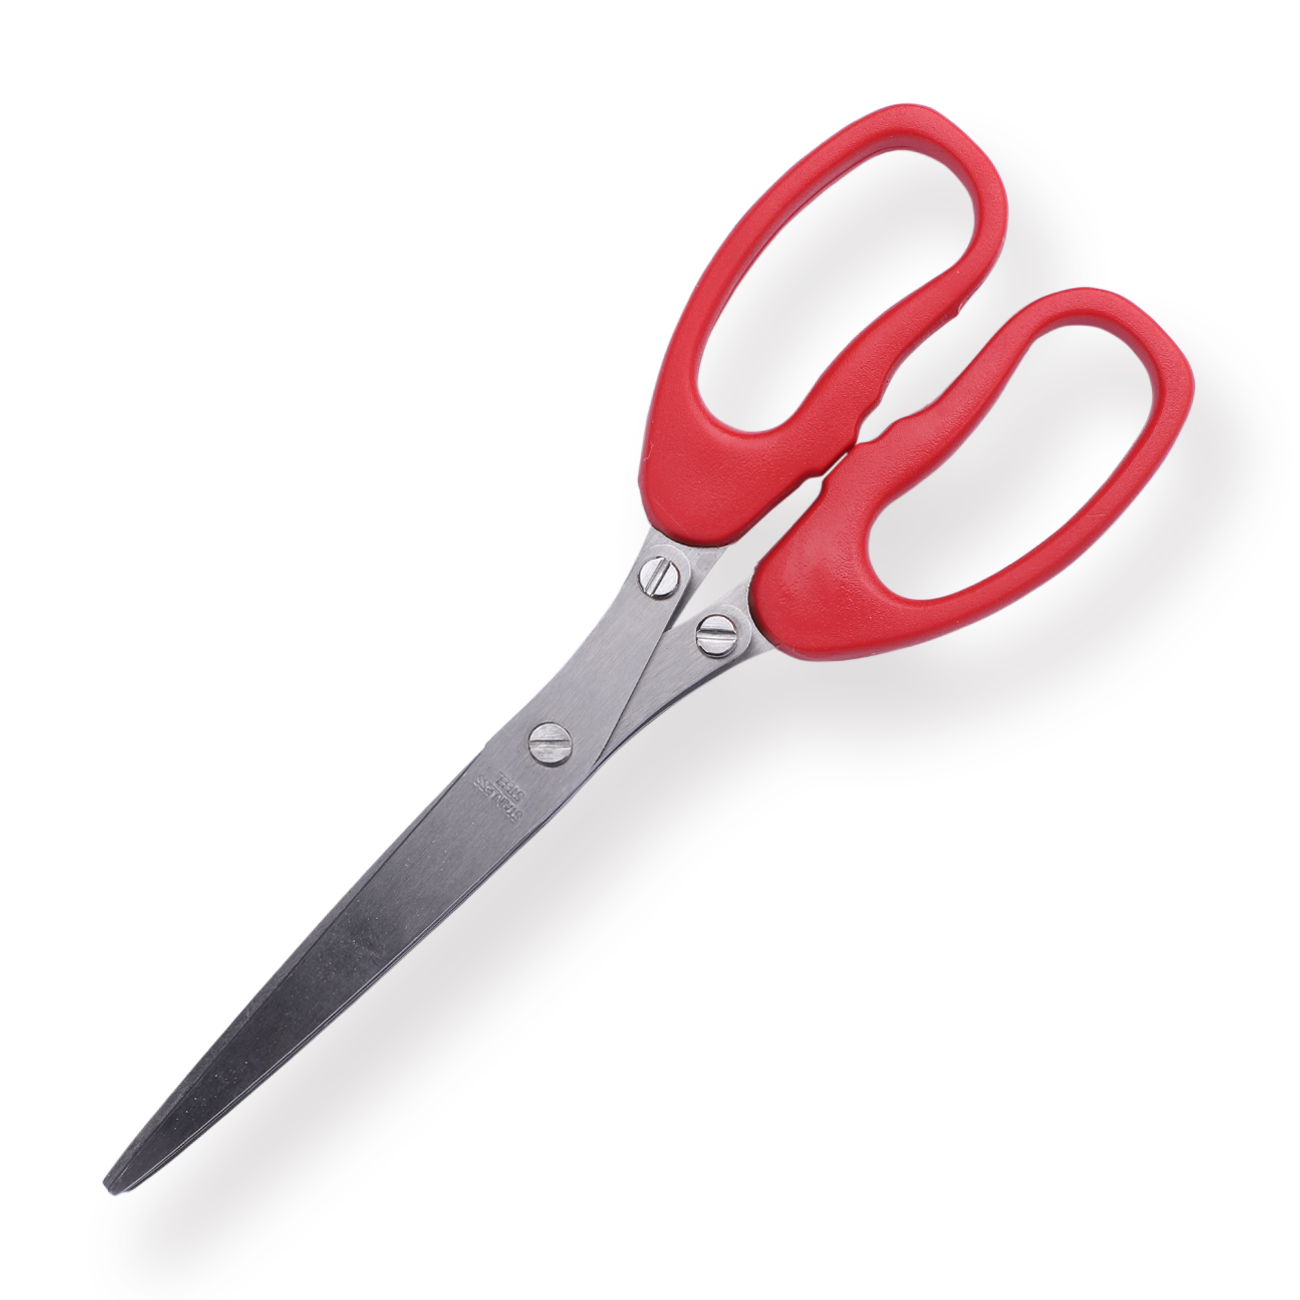 Multi-purpose Five-layer Scissors - Red